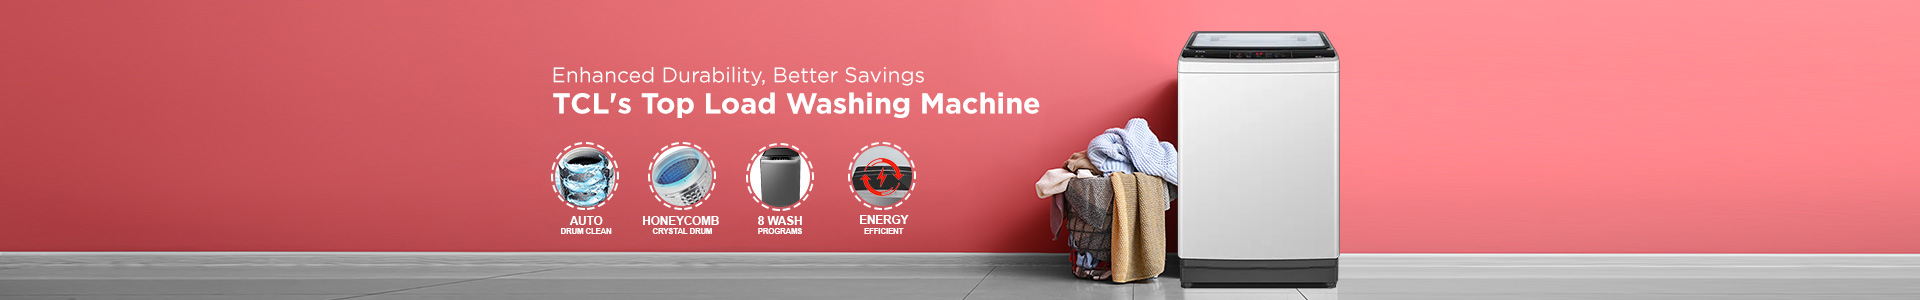 TCL Top Load Washine Machines